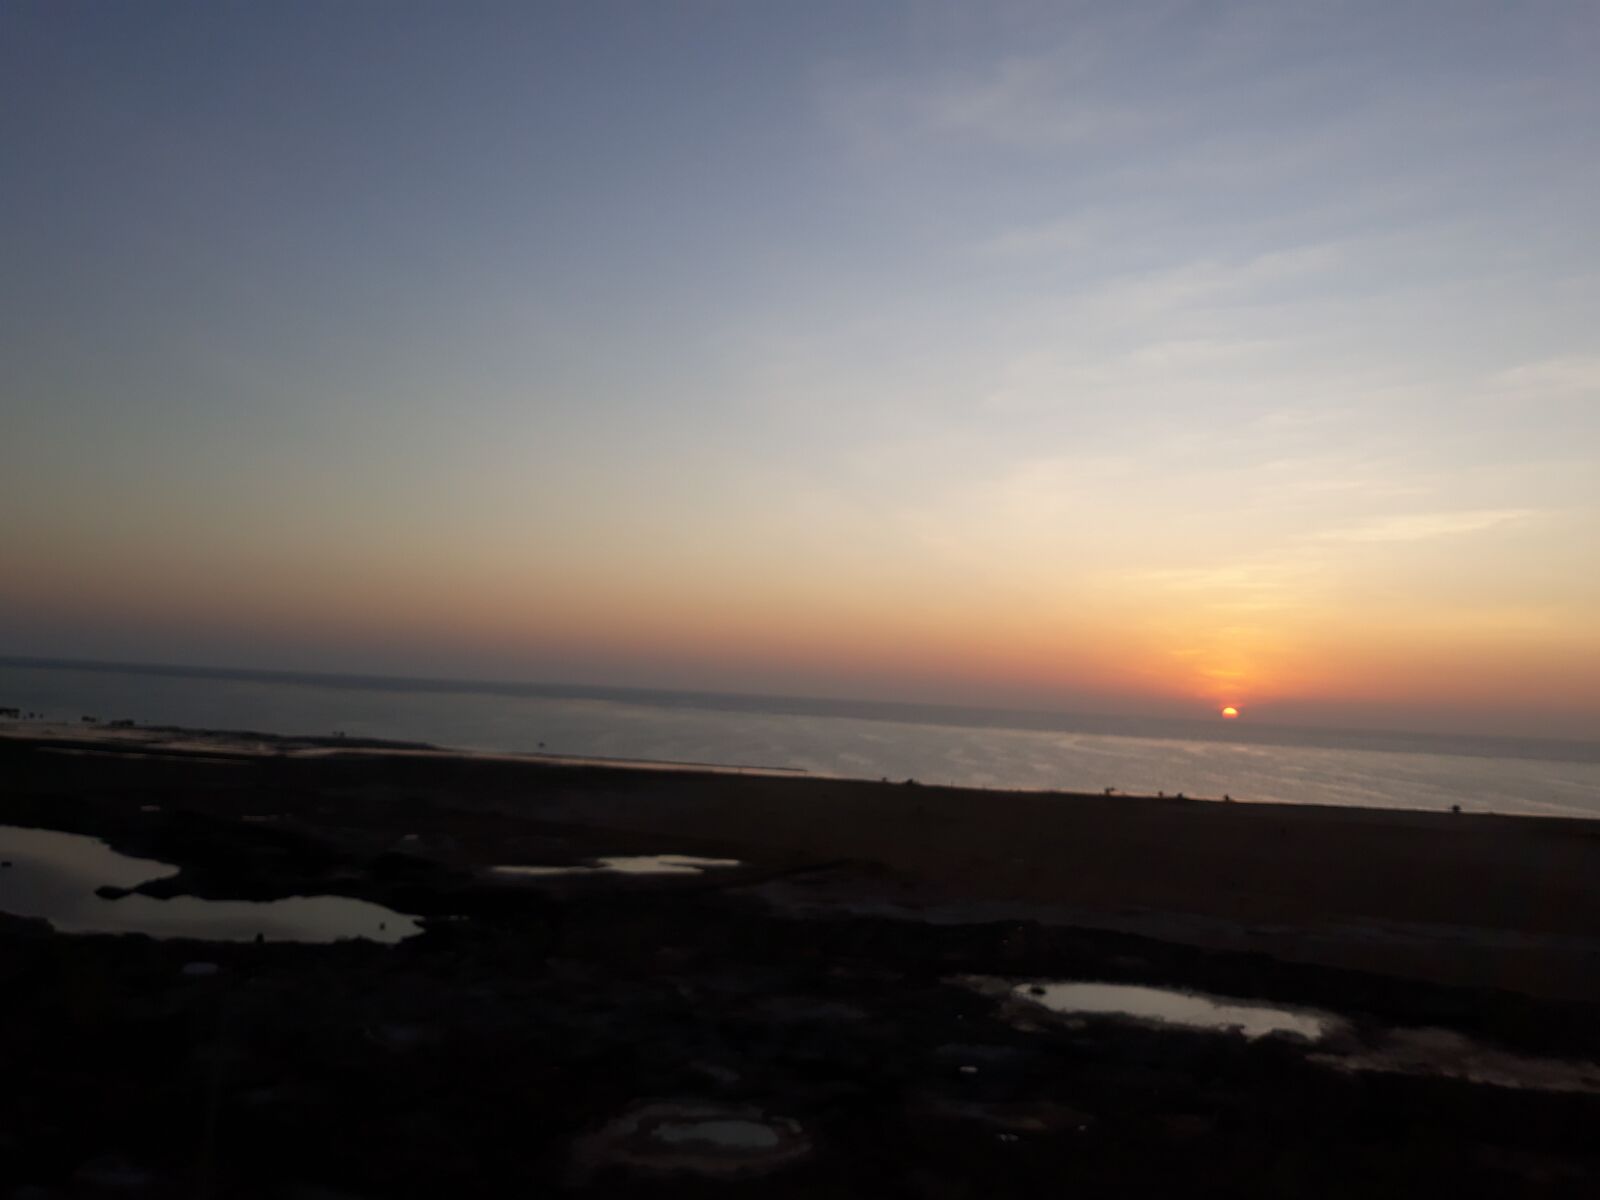 Samsung Galaxy J7 sample photo. Sunset, jeddah, saudi arabia photography